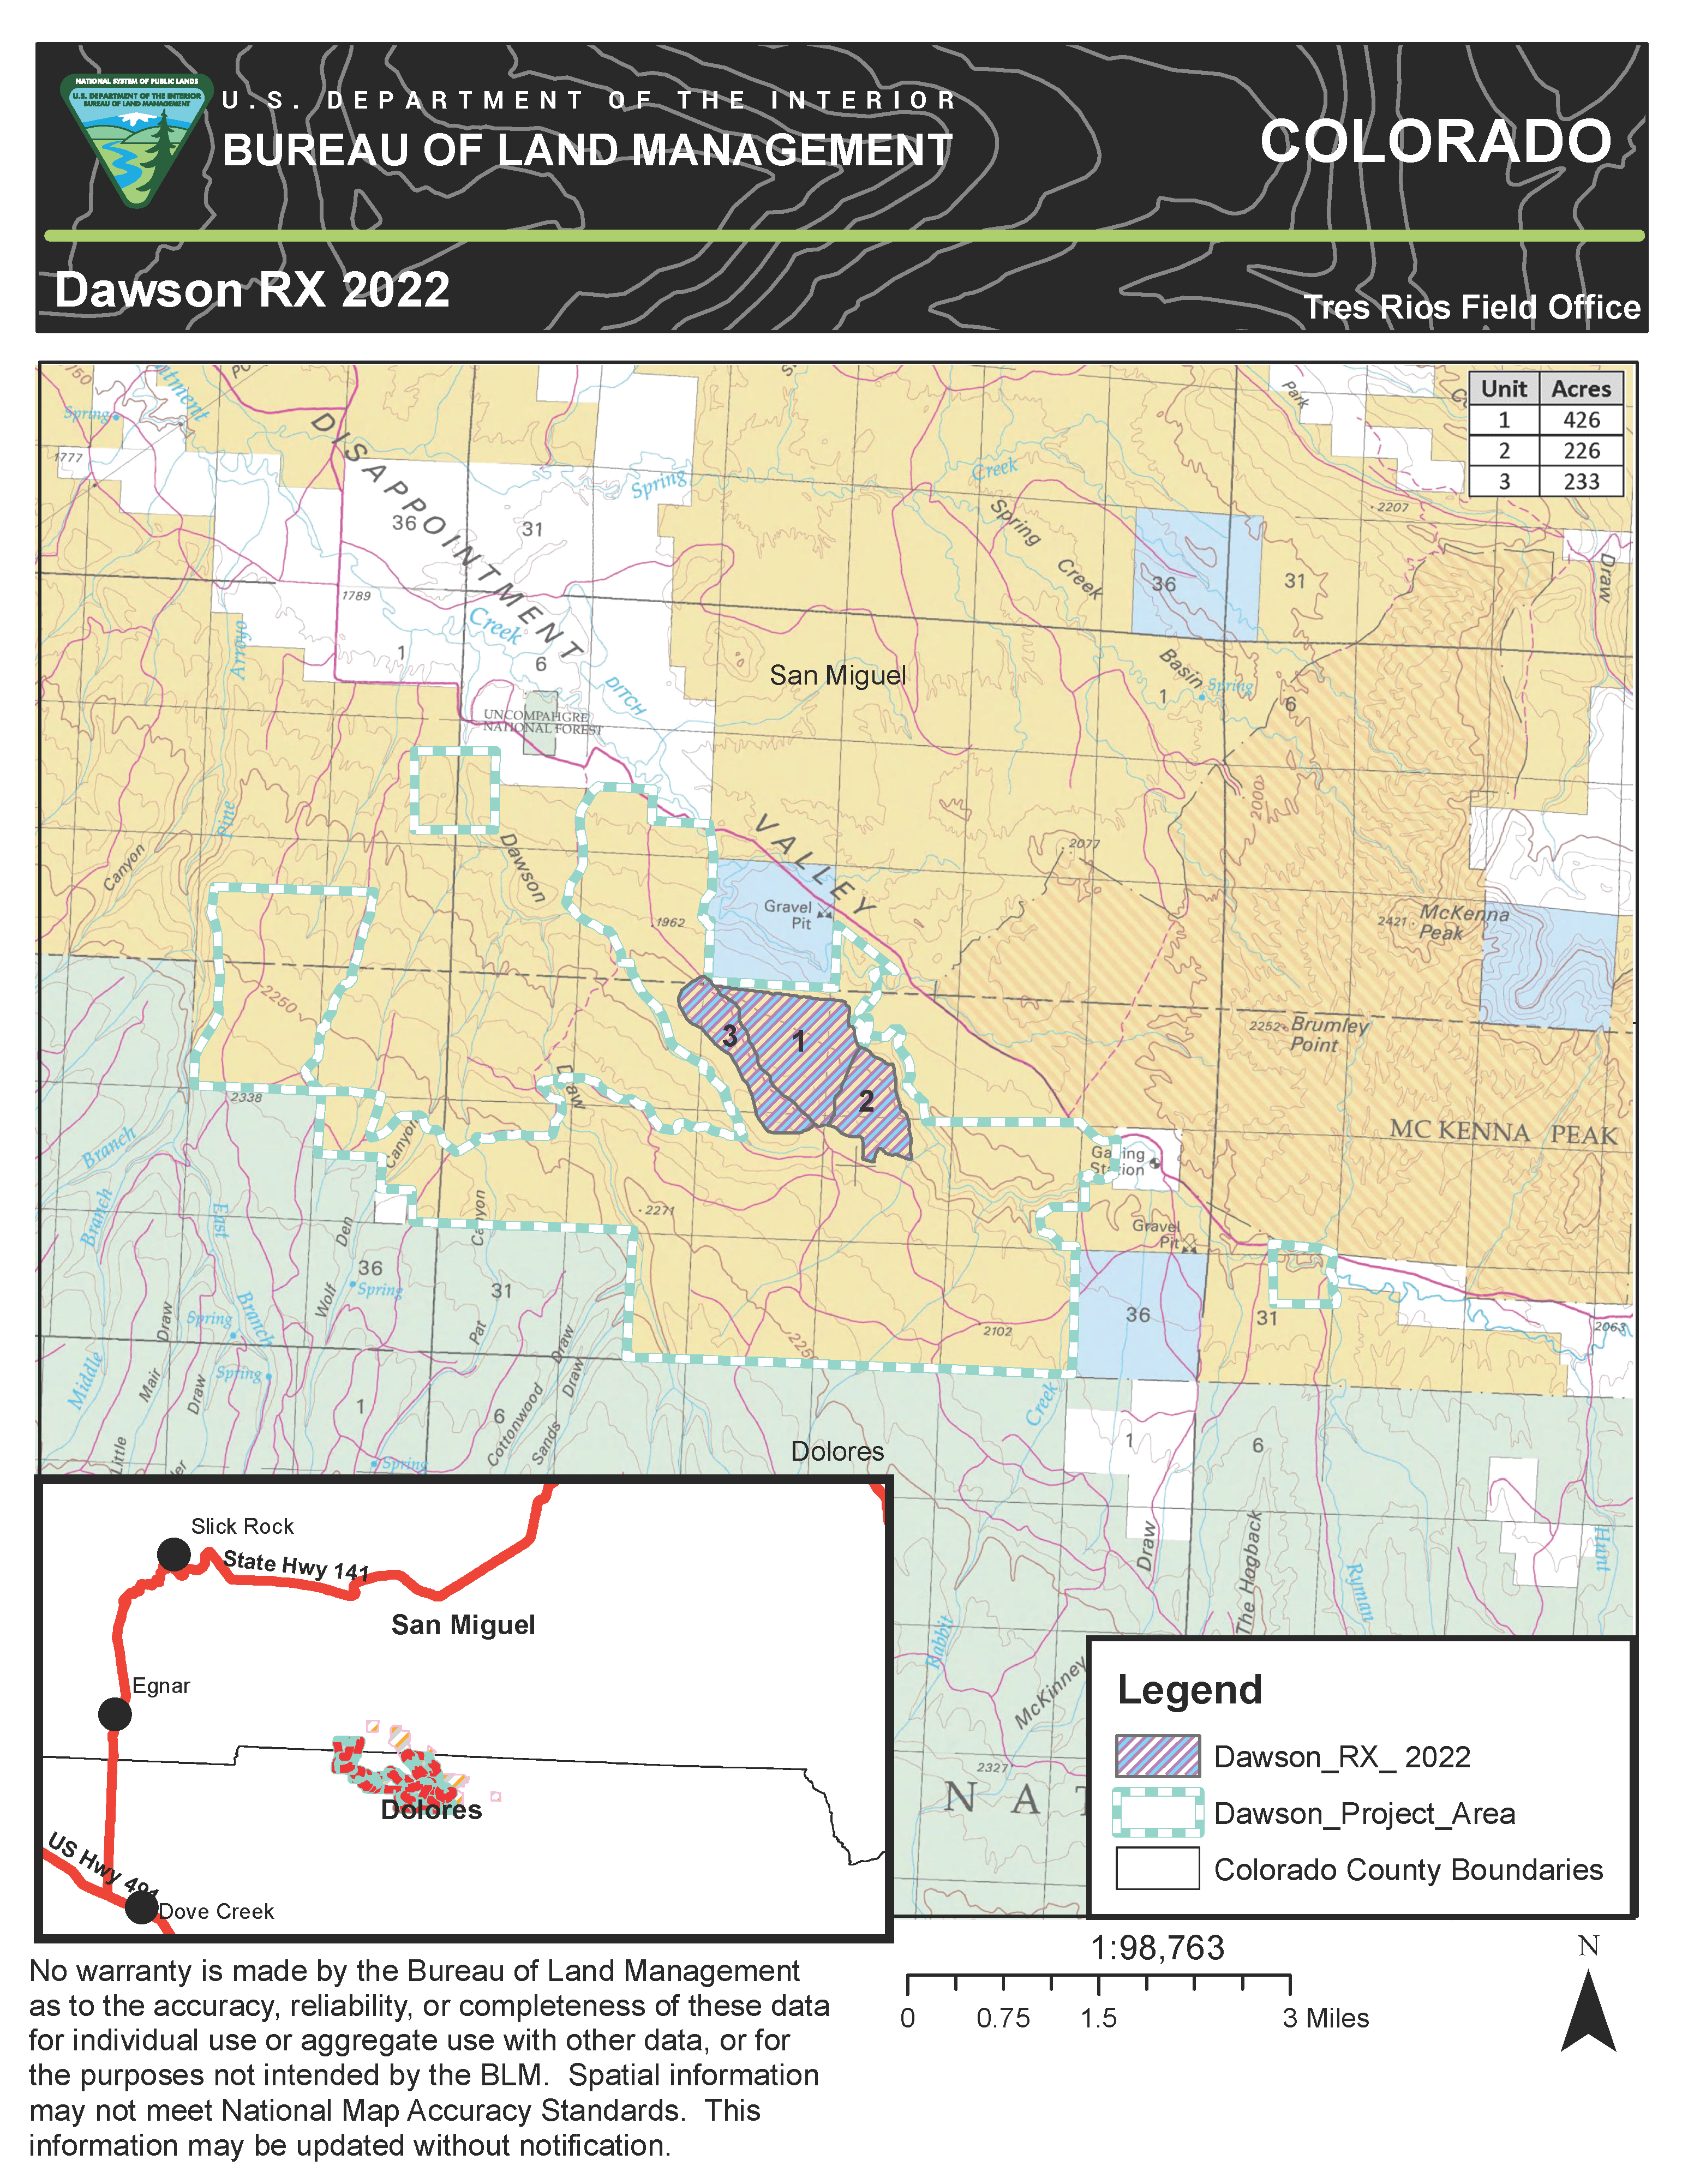 Dawson RX Burn Map 2022